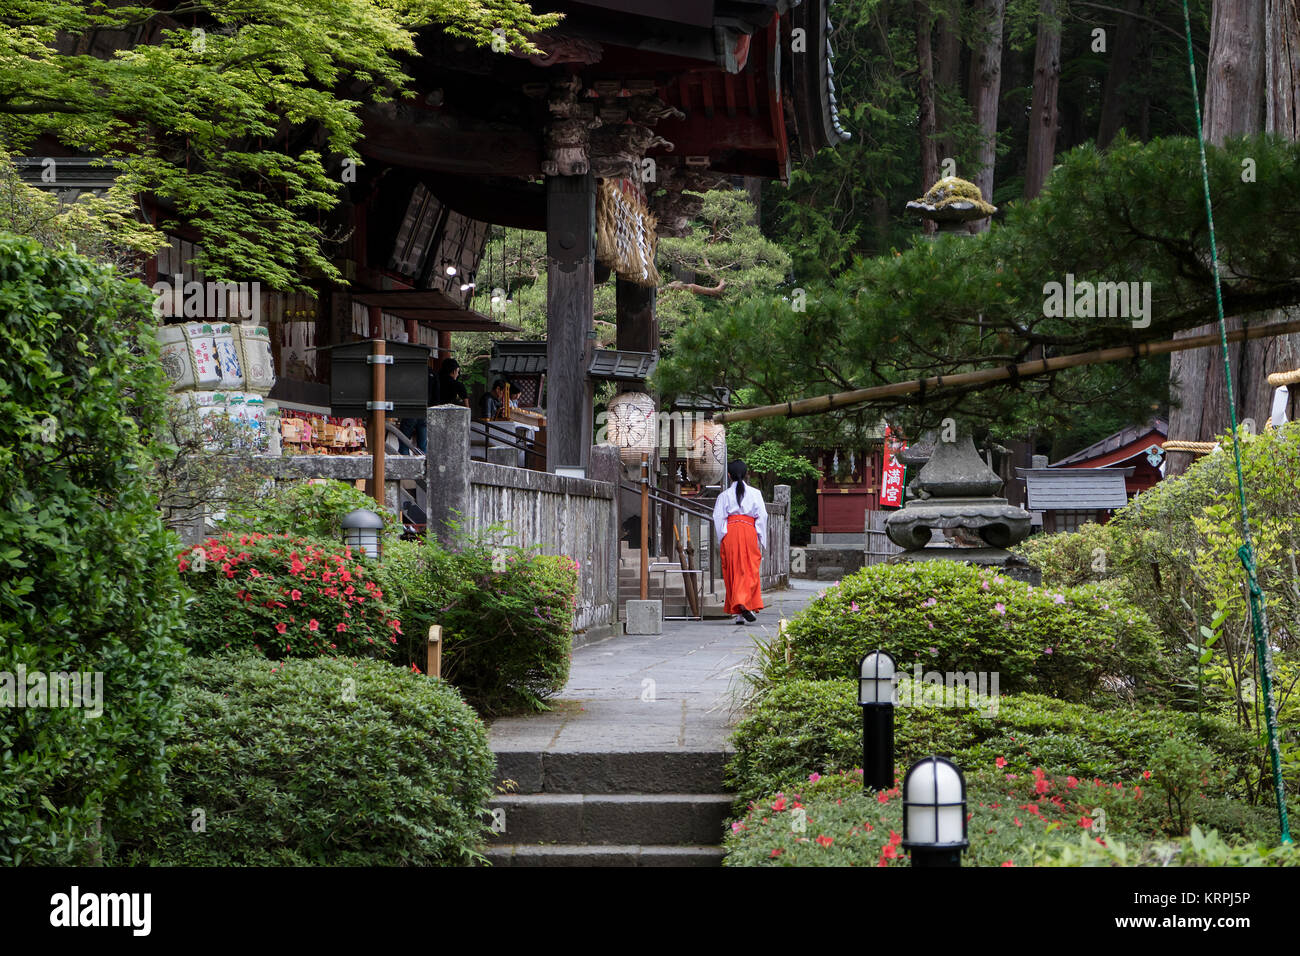 Fujiyoshida city - Japan, June 13, 2017: Miko, shrine maiden, is passing by the Fujiyoshida Sengen Shrine in Fujiyoshida c Stock Photo